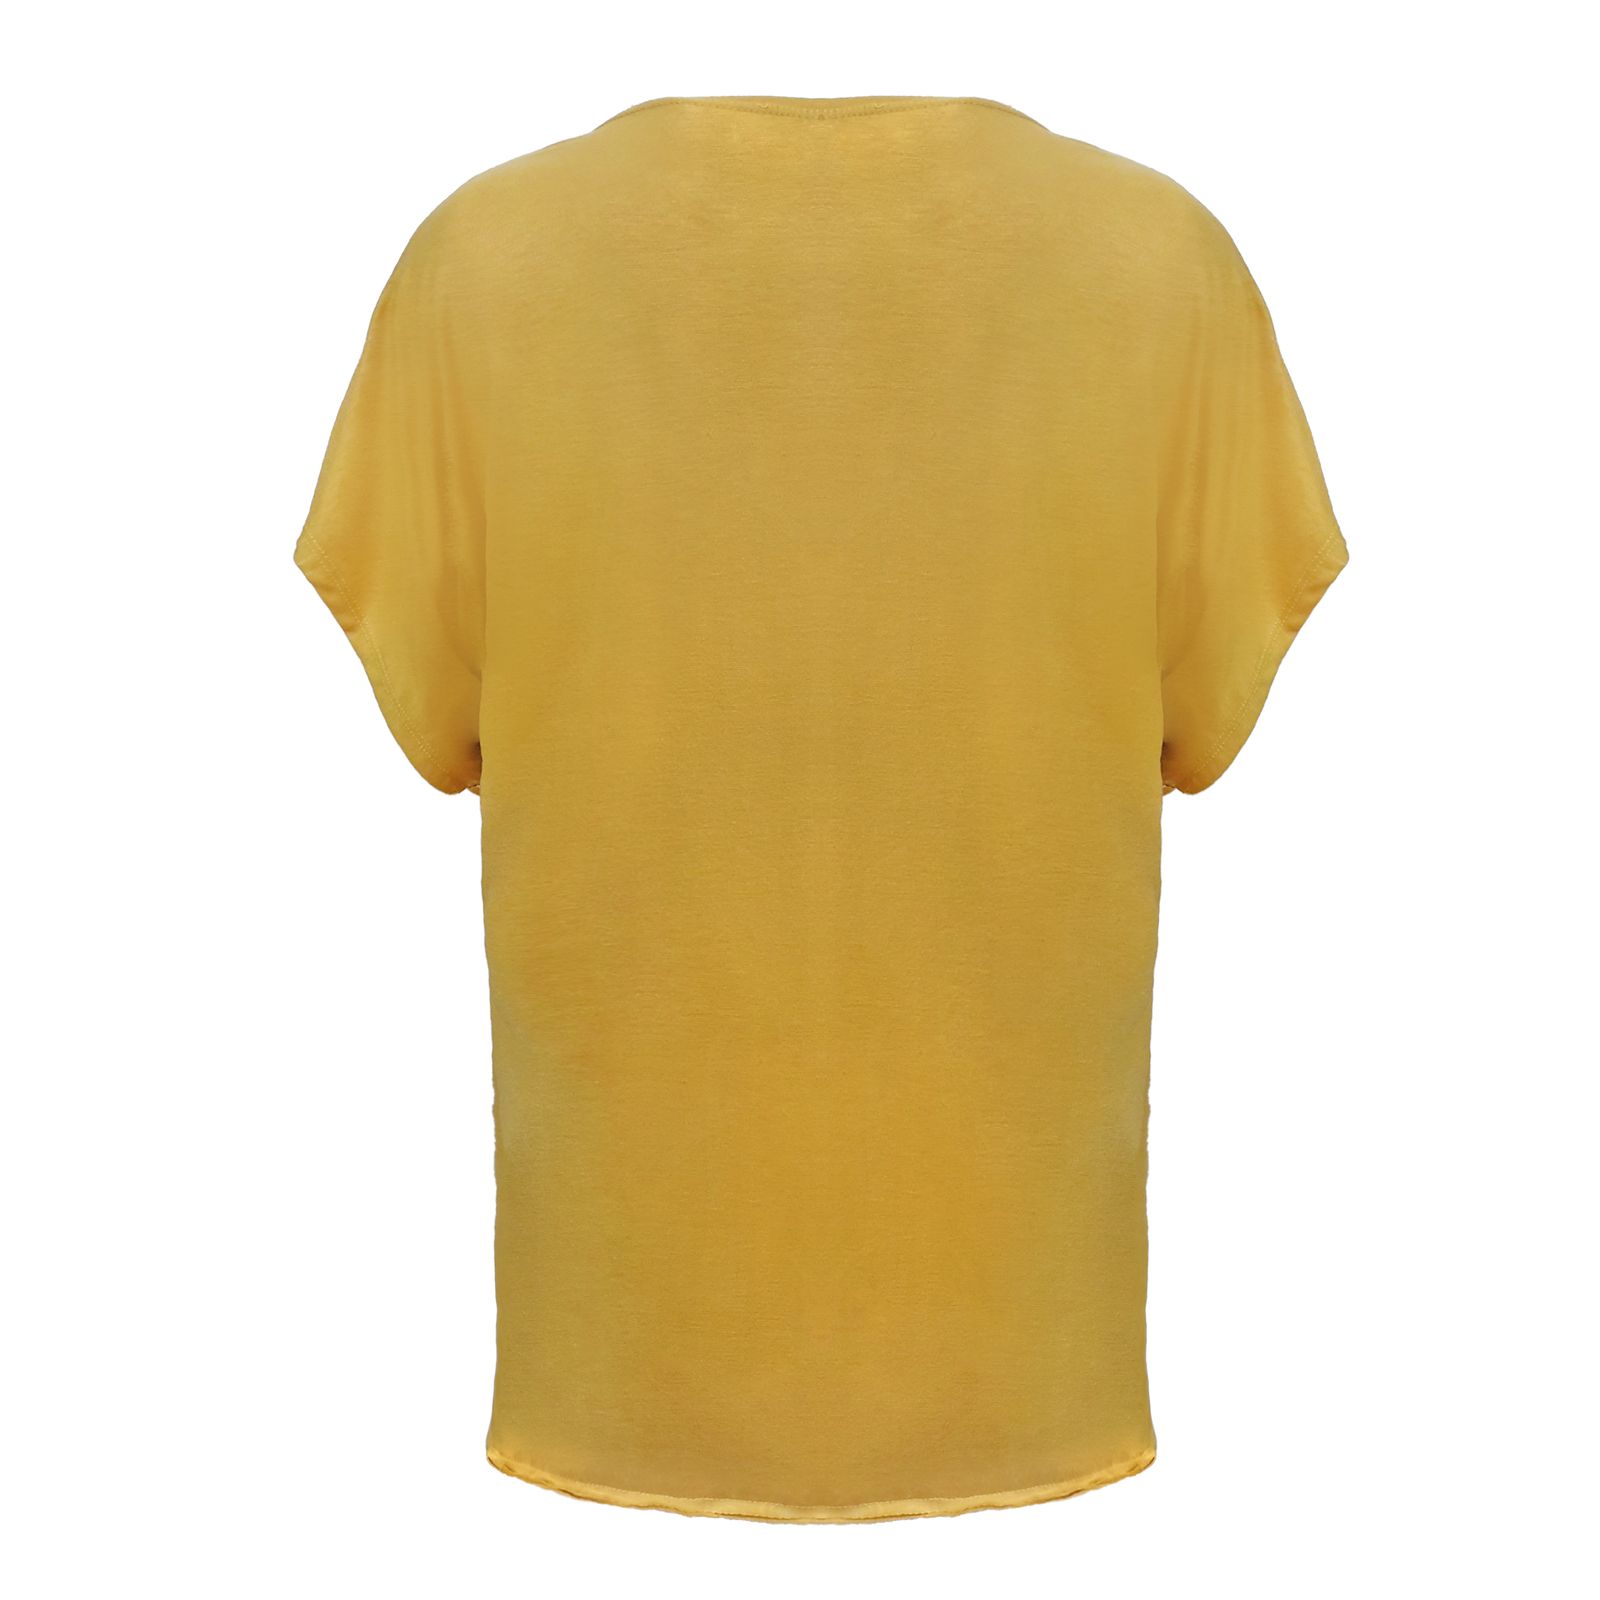 تی شرت زنانه افراتین کد 3528 رنگ خردلی -  - 3